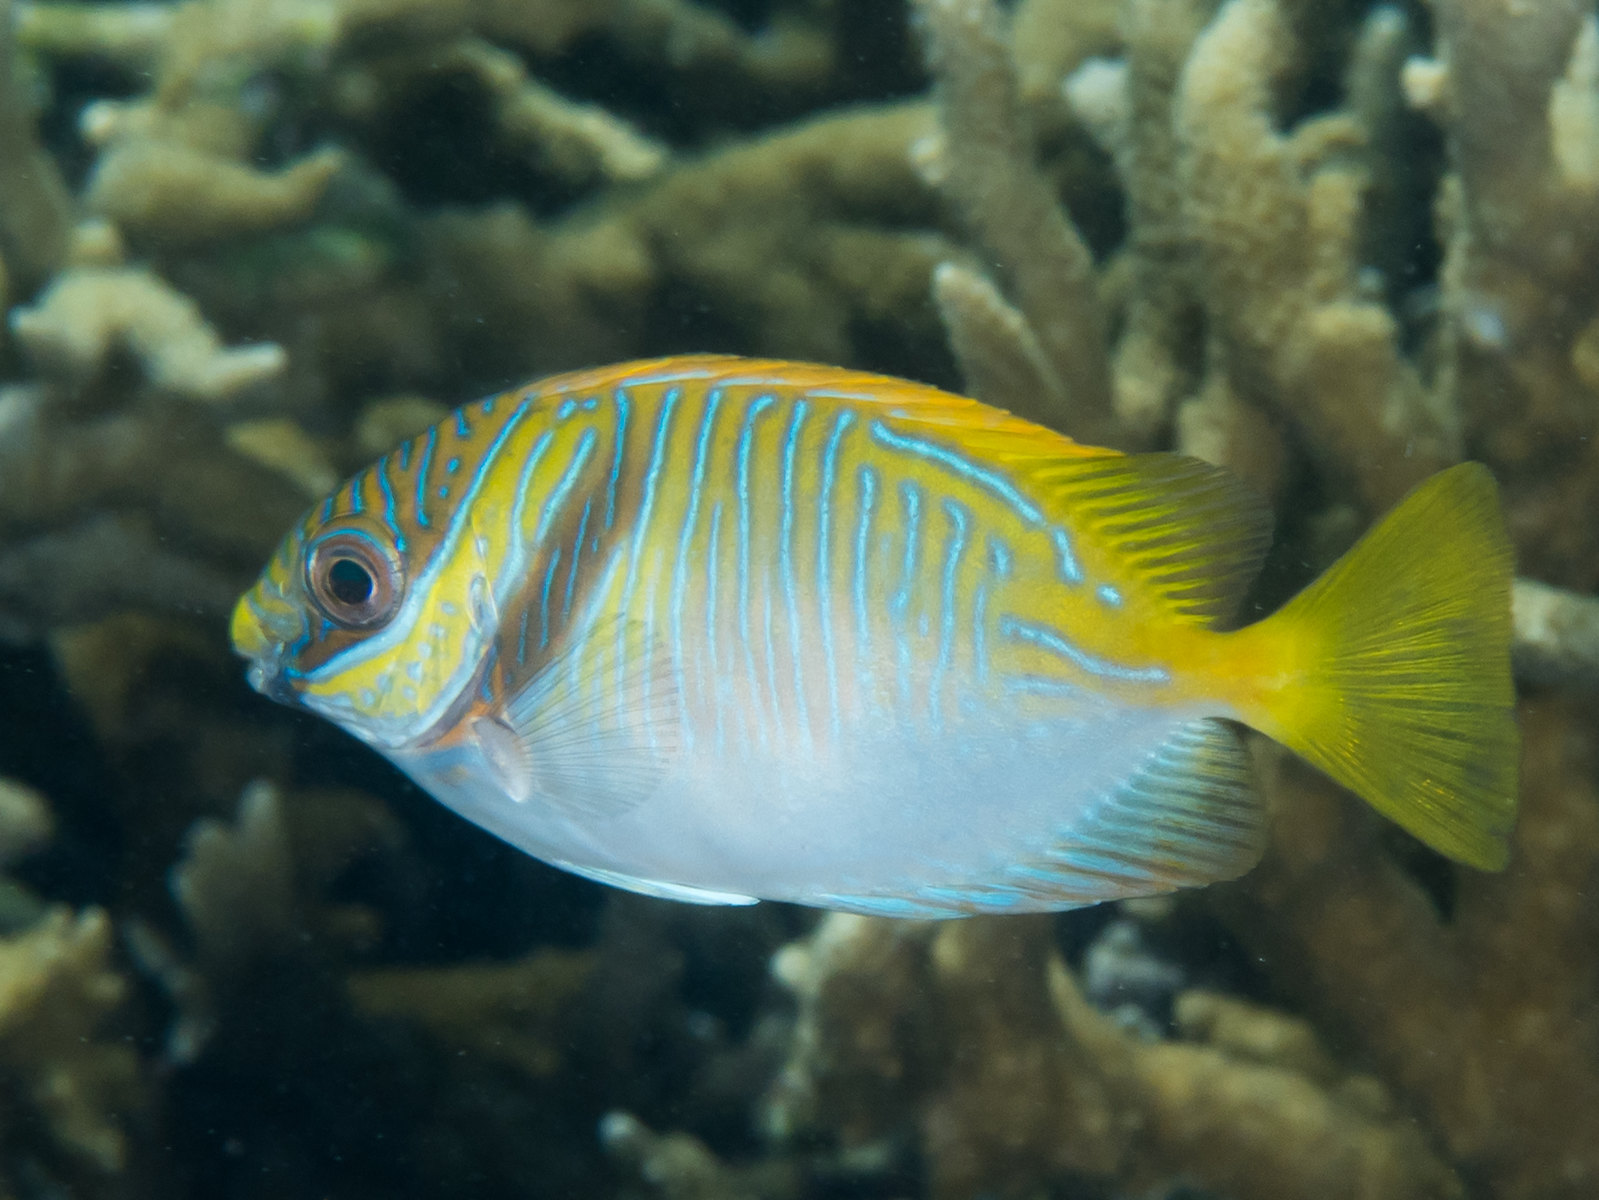 Découverte d'une nouvelle espèce de poisson marin des grandes profondeurs,  Polyipnus laruei